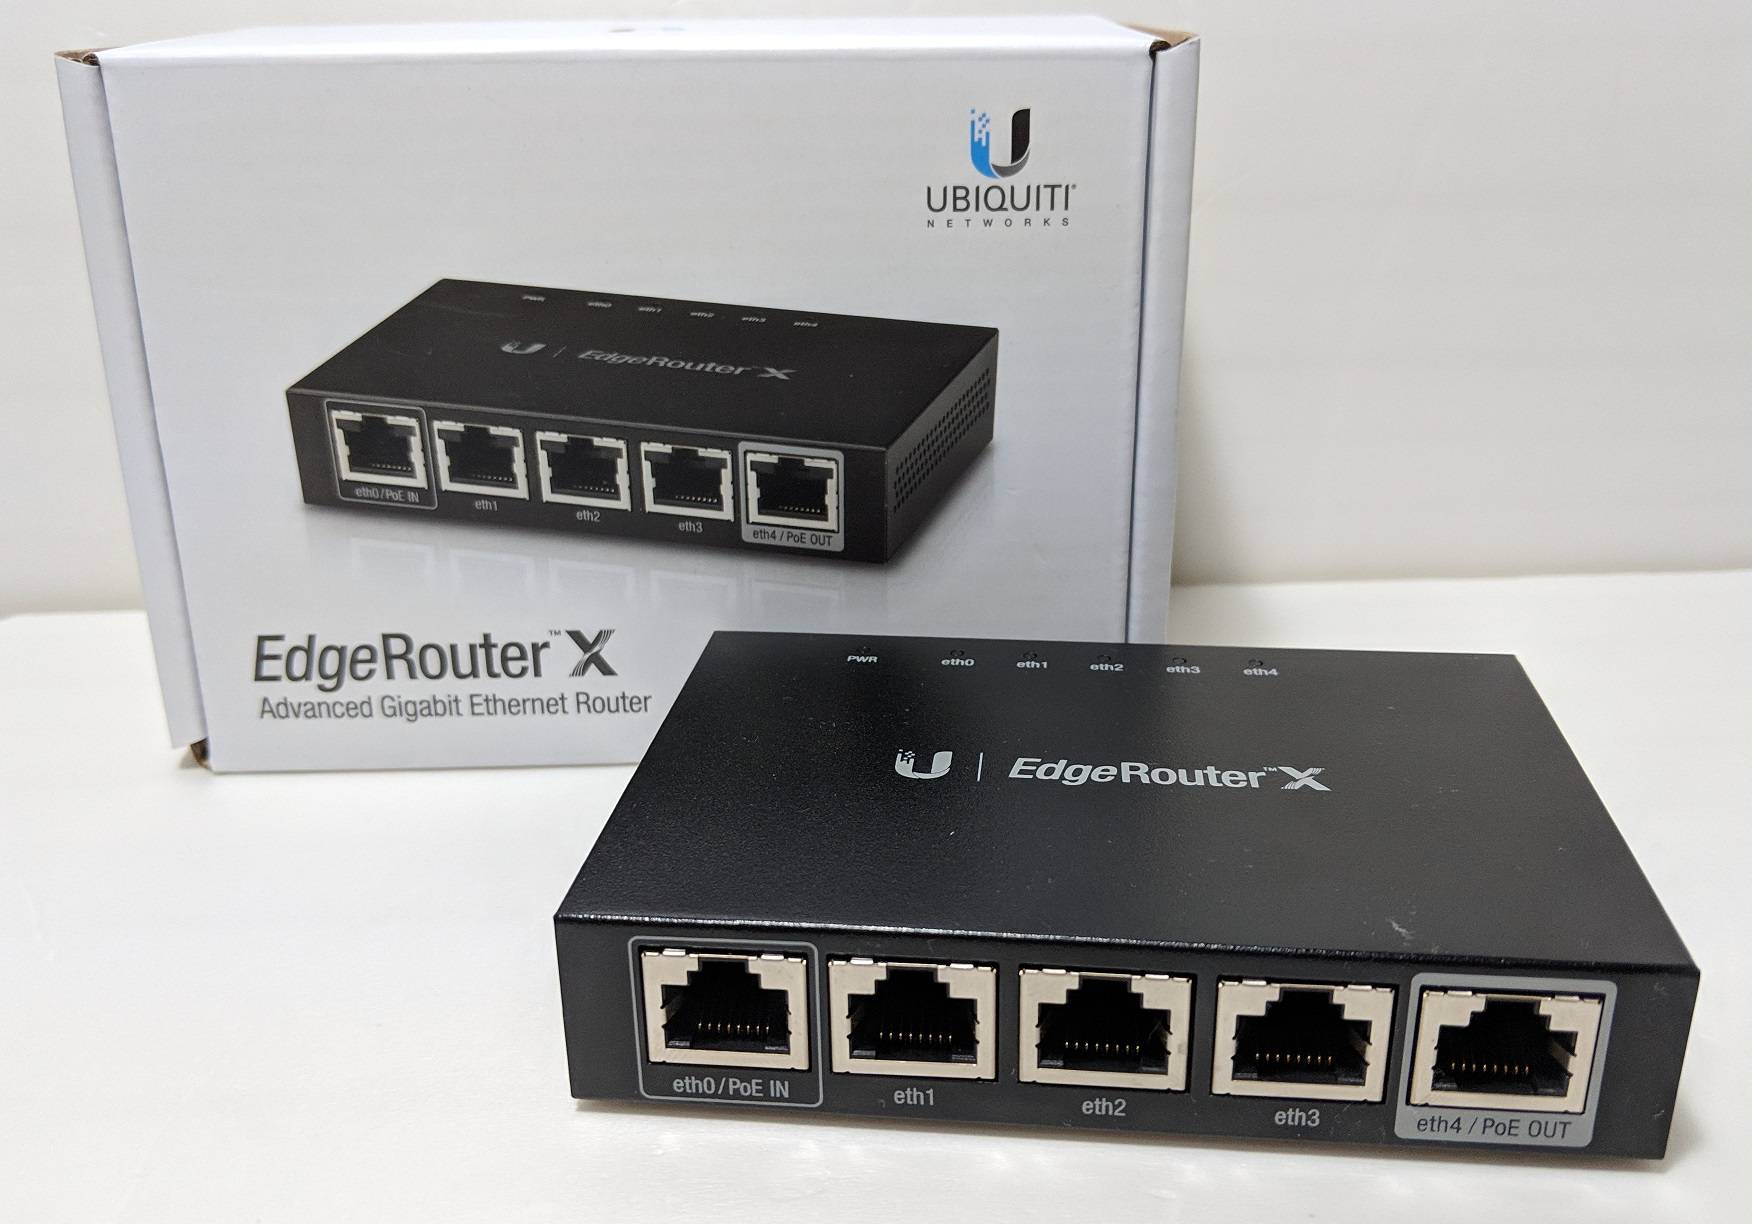 Invalidez Por nombre monitor Unboxing of Ubiquiti Networks EdgeRouter X Gigabit Ethernet Router –  UnbxTech